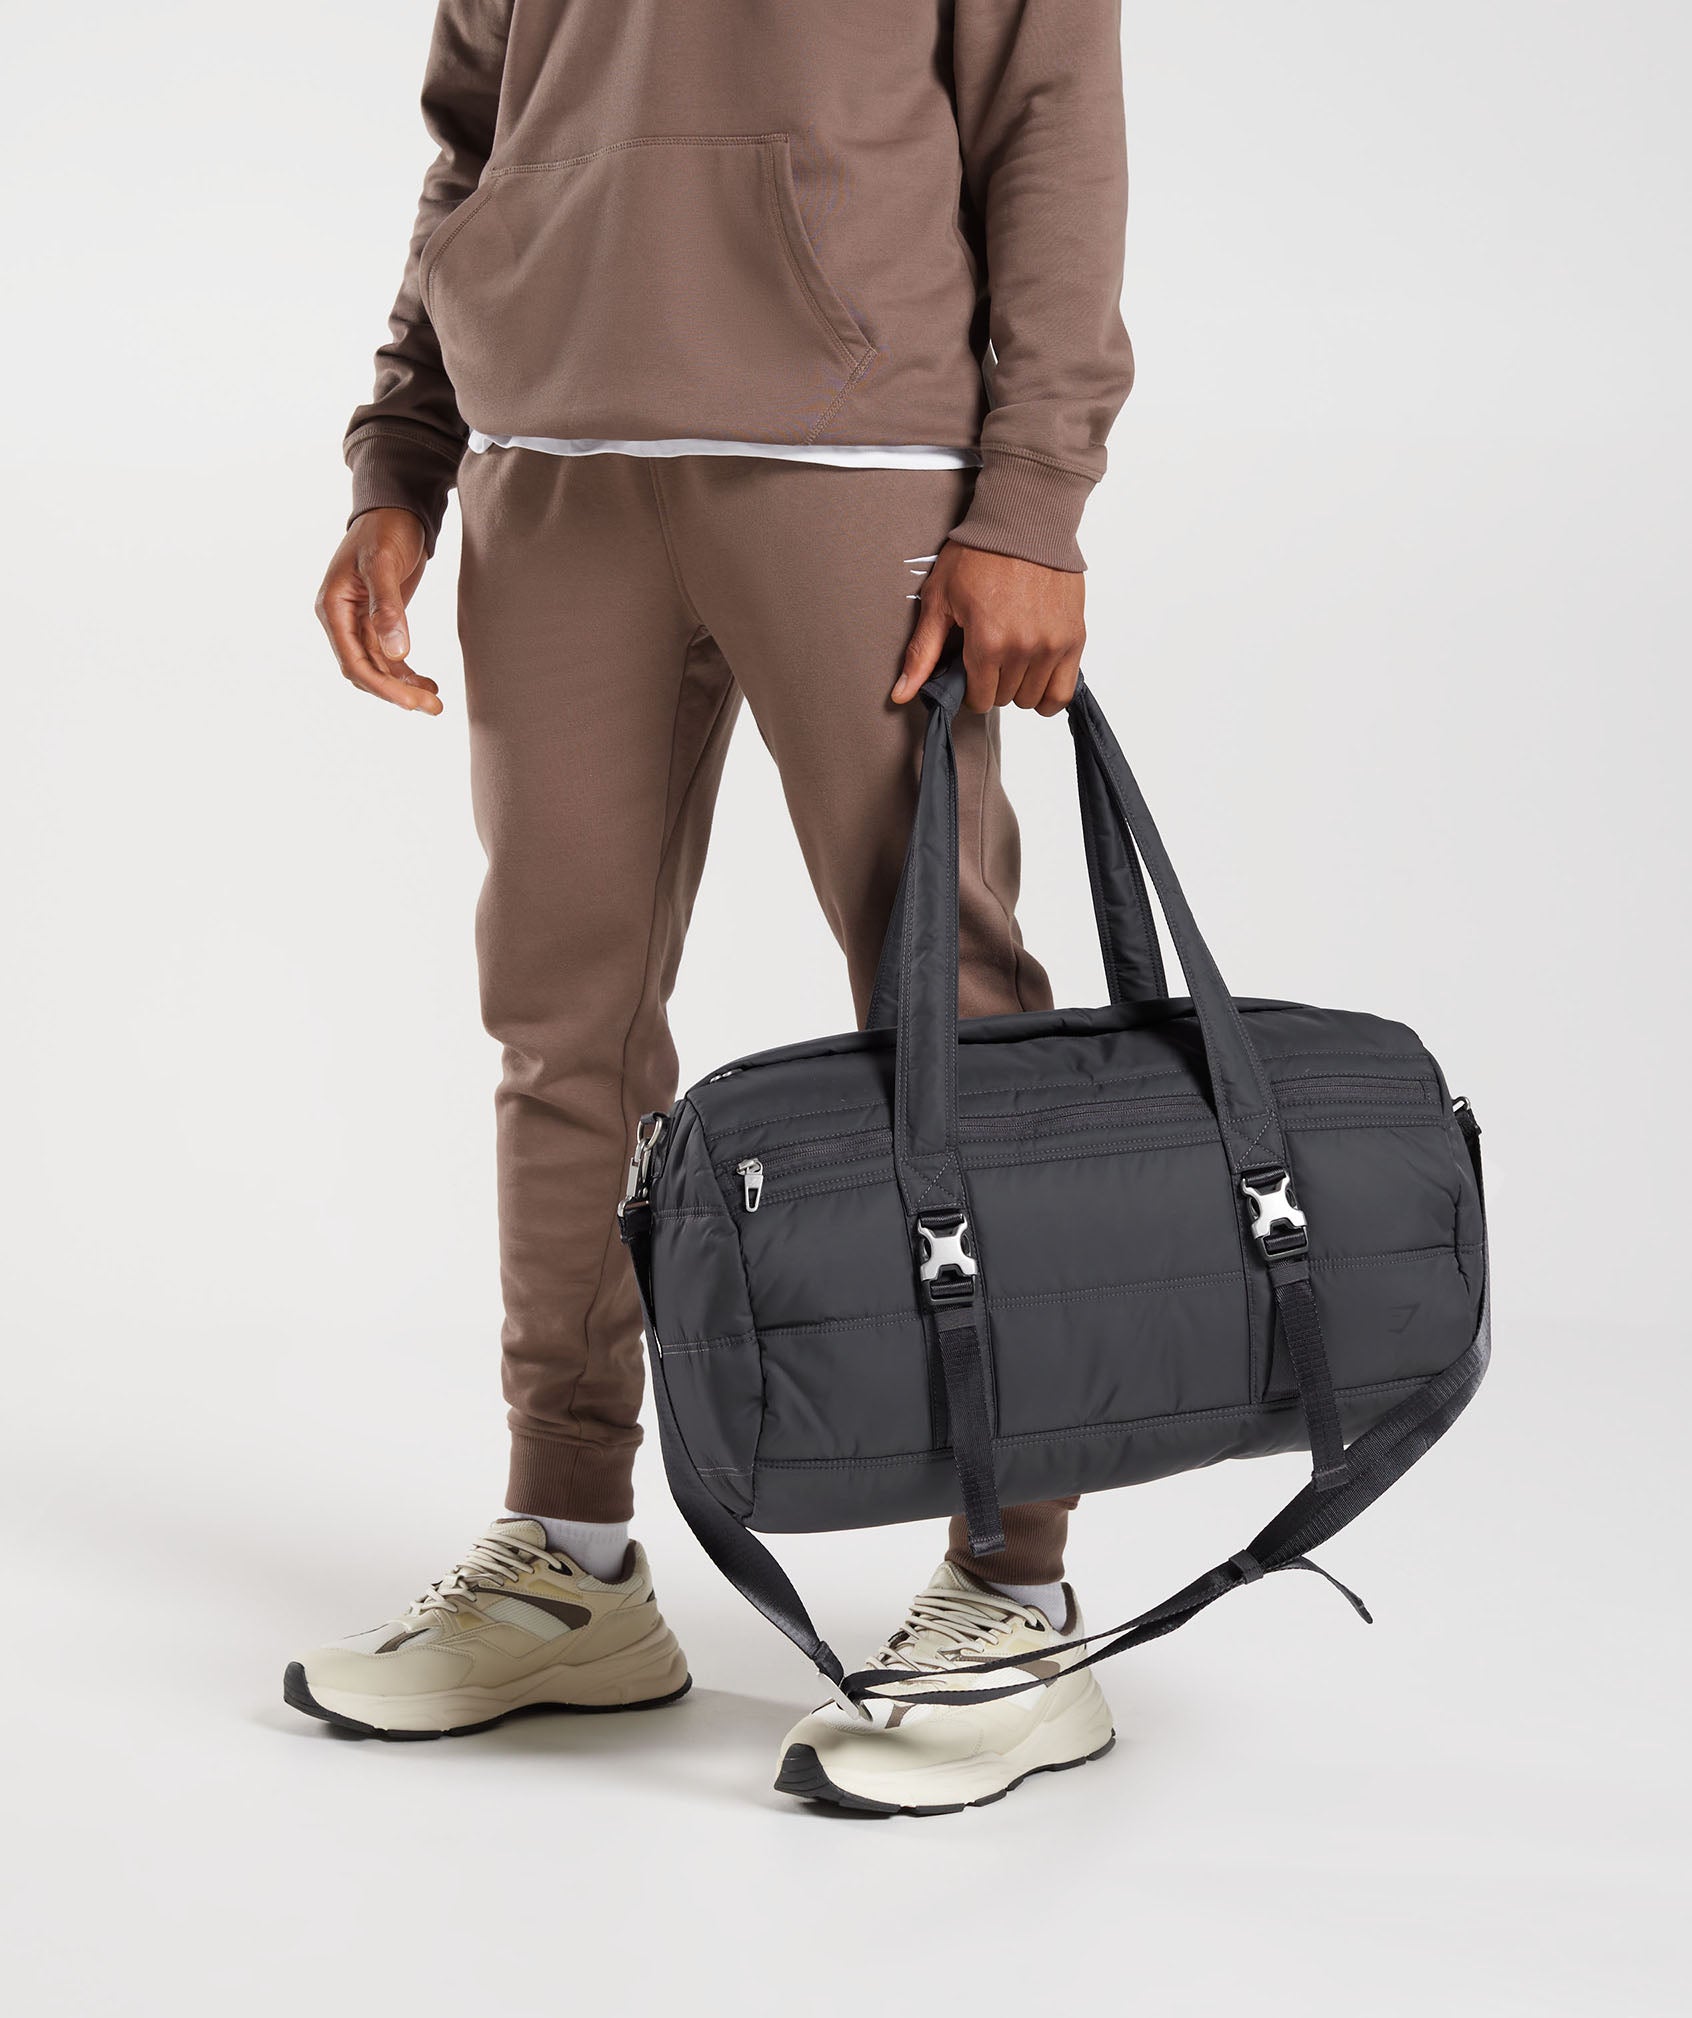 Lifestyle Barrel Bag in Onyx Grey